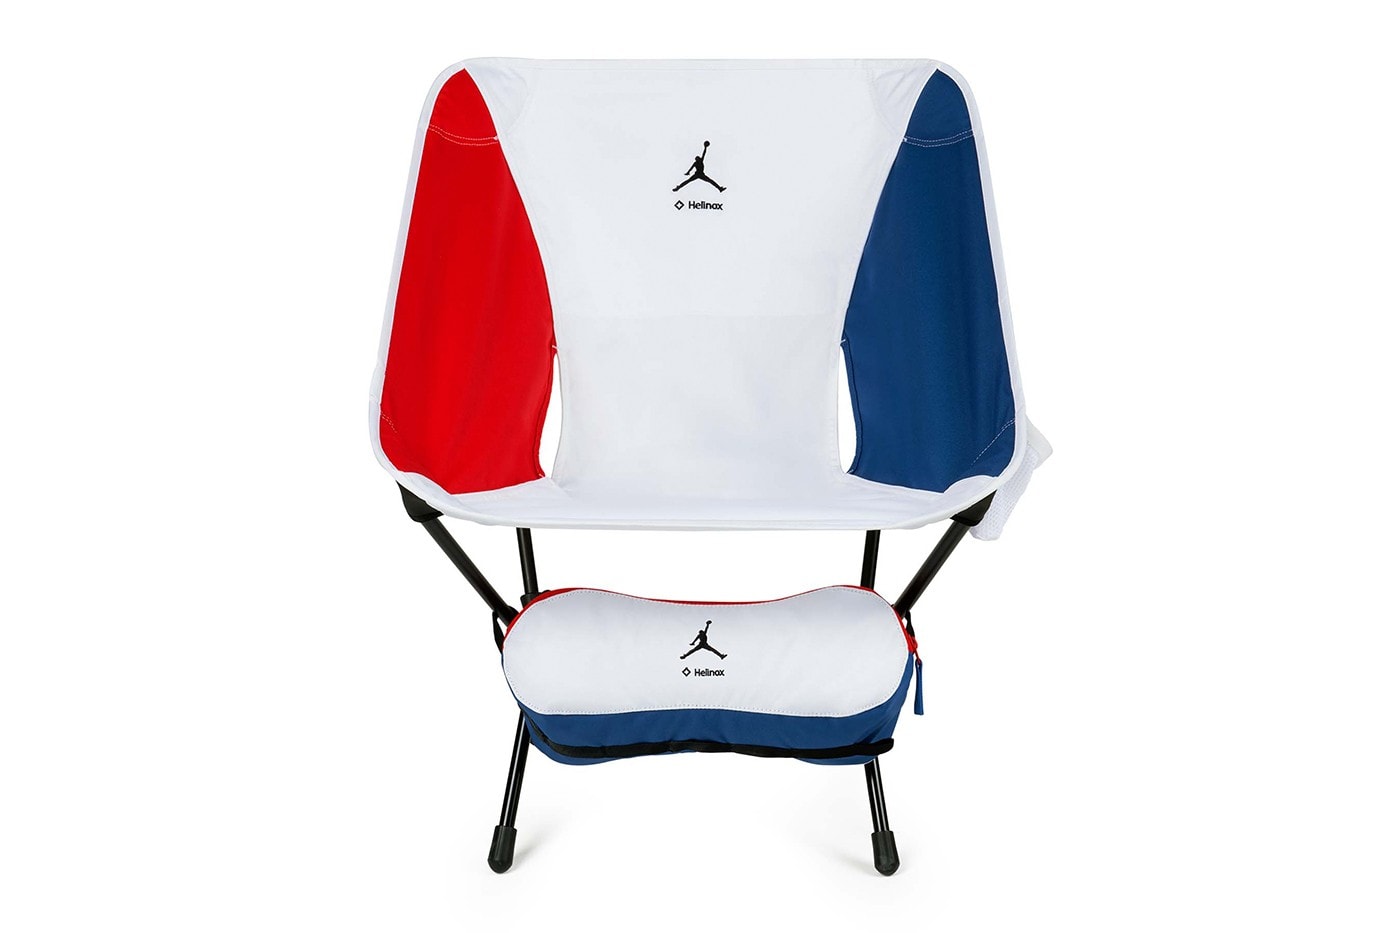 Jordan Brand x Helinox 最新聯名露營椅「Chair One」正式登場